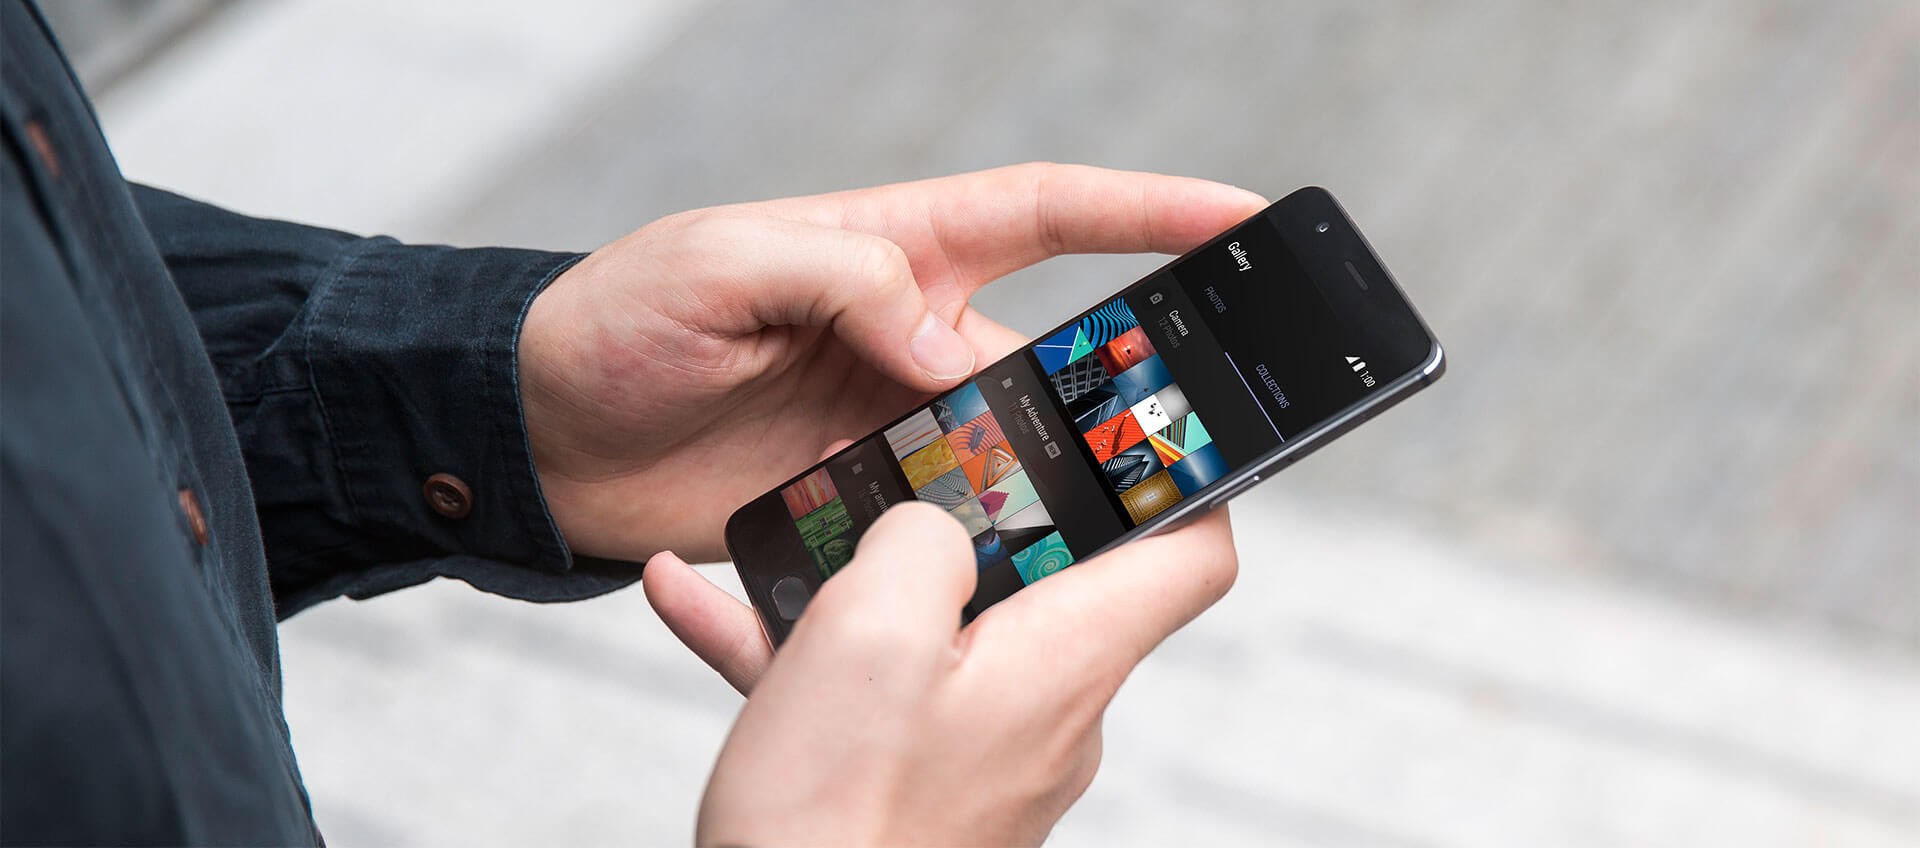 OnePlus 5 detectado nuevamente, más detalles y especificaciones revelados